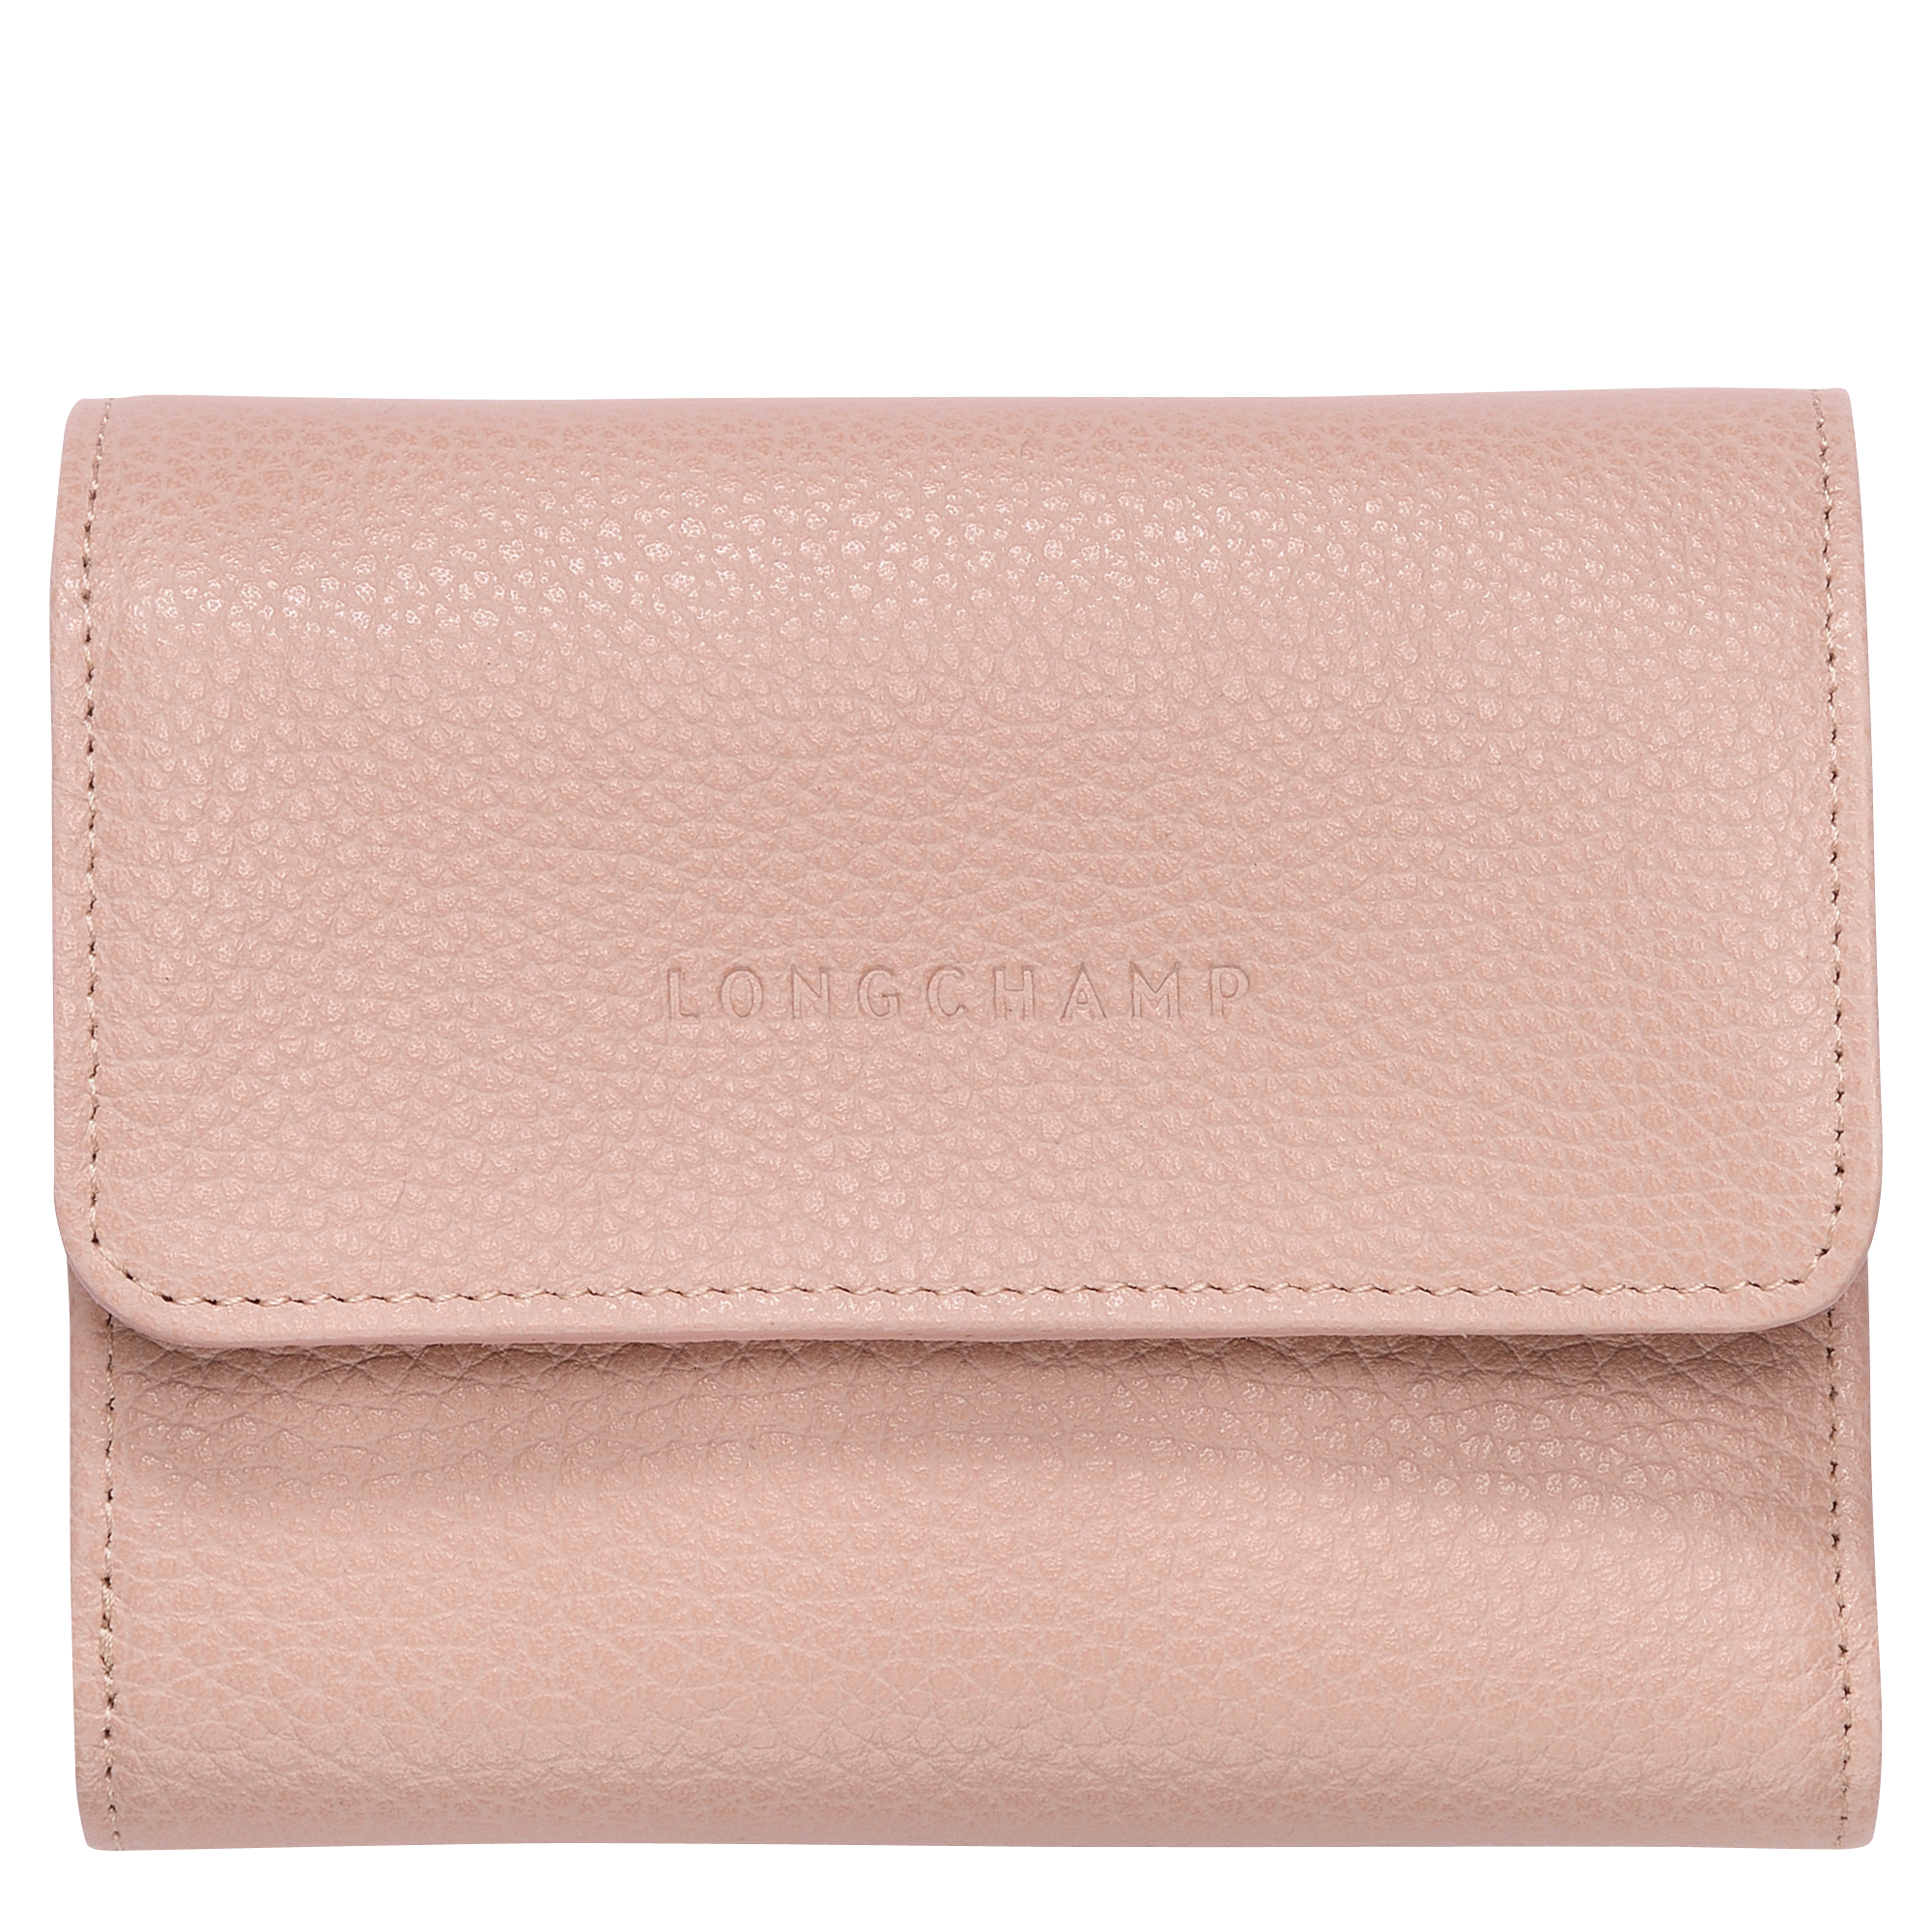 longchamp le foulonne compact wallet